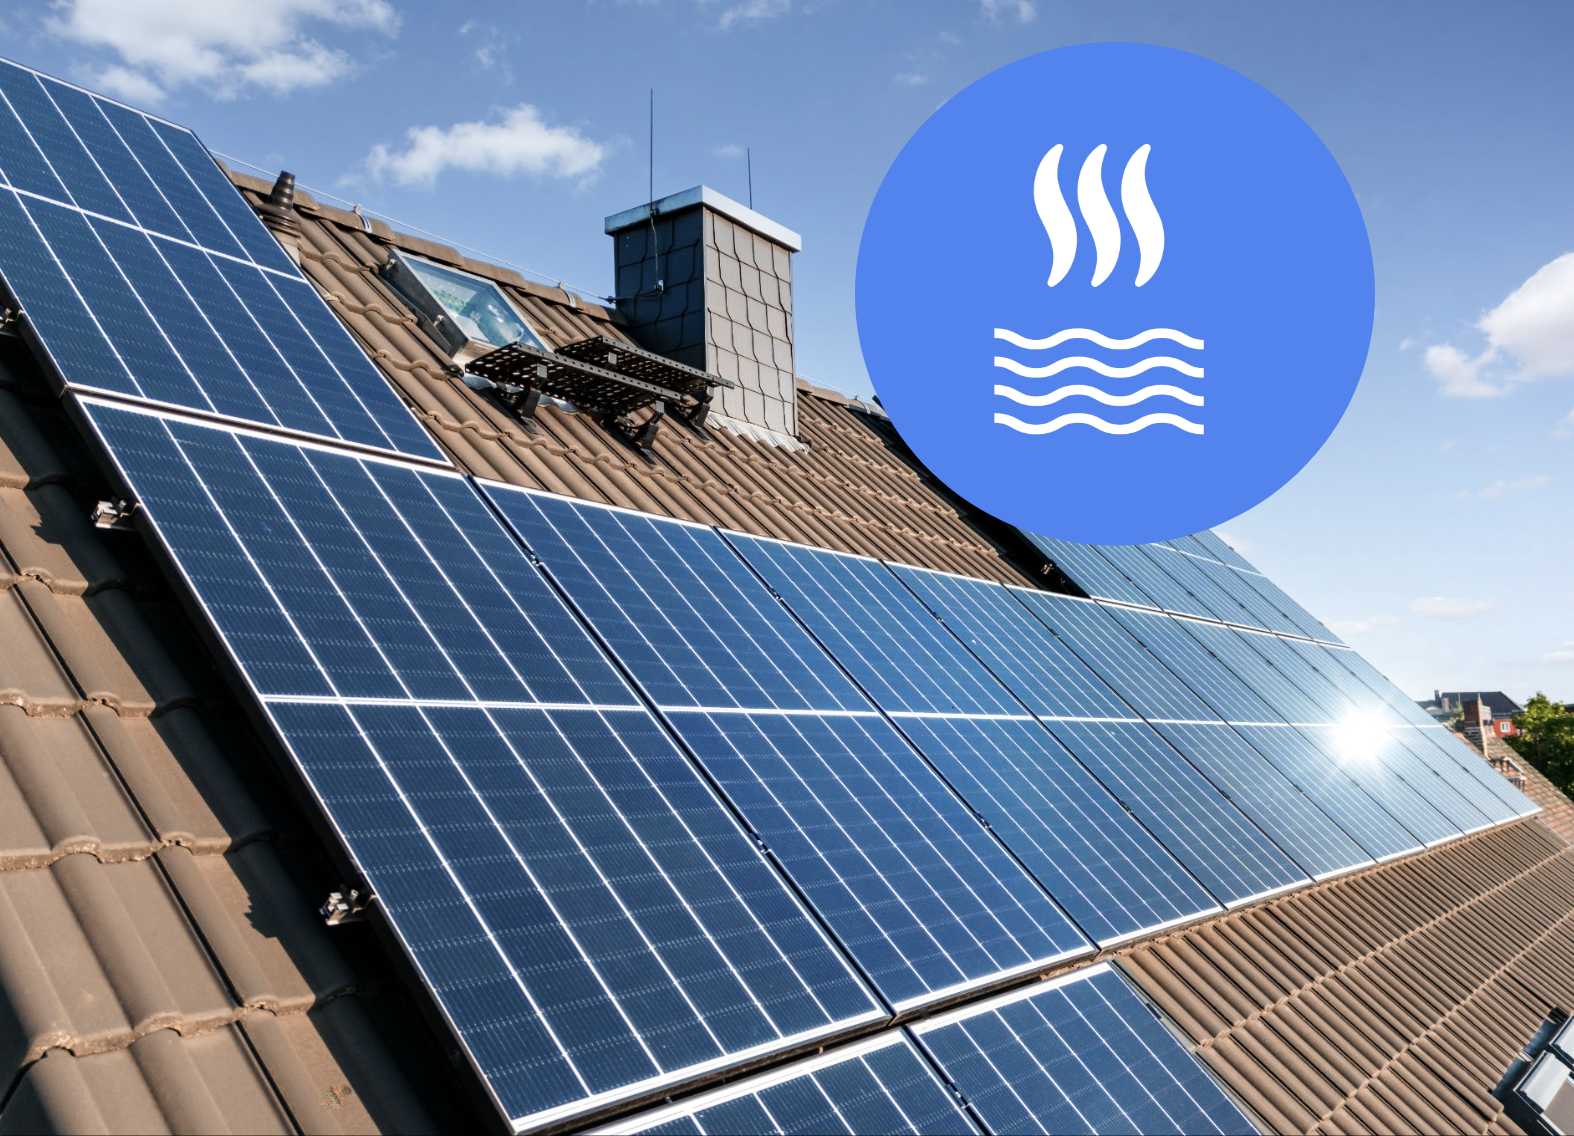 Solarthermie - mit Solaranlagen heizen und Warmwasser erzeugen